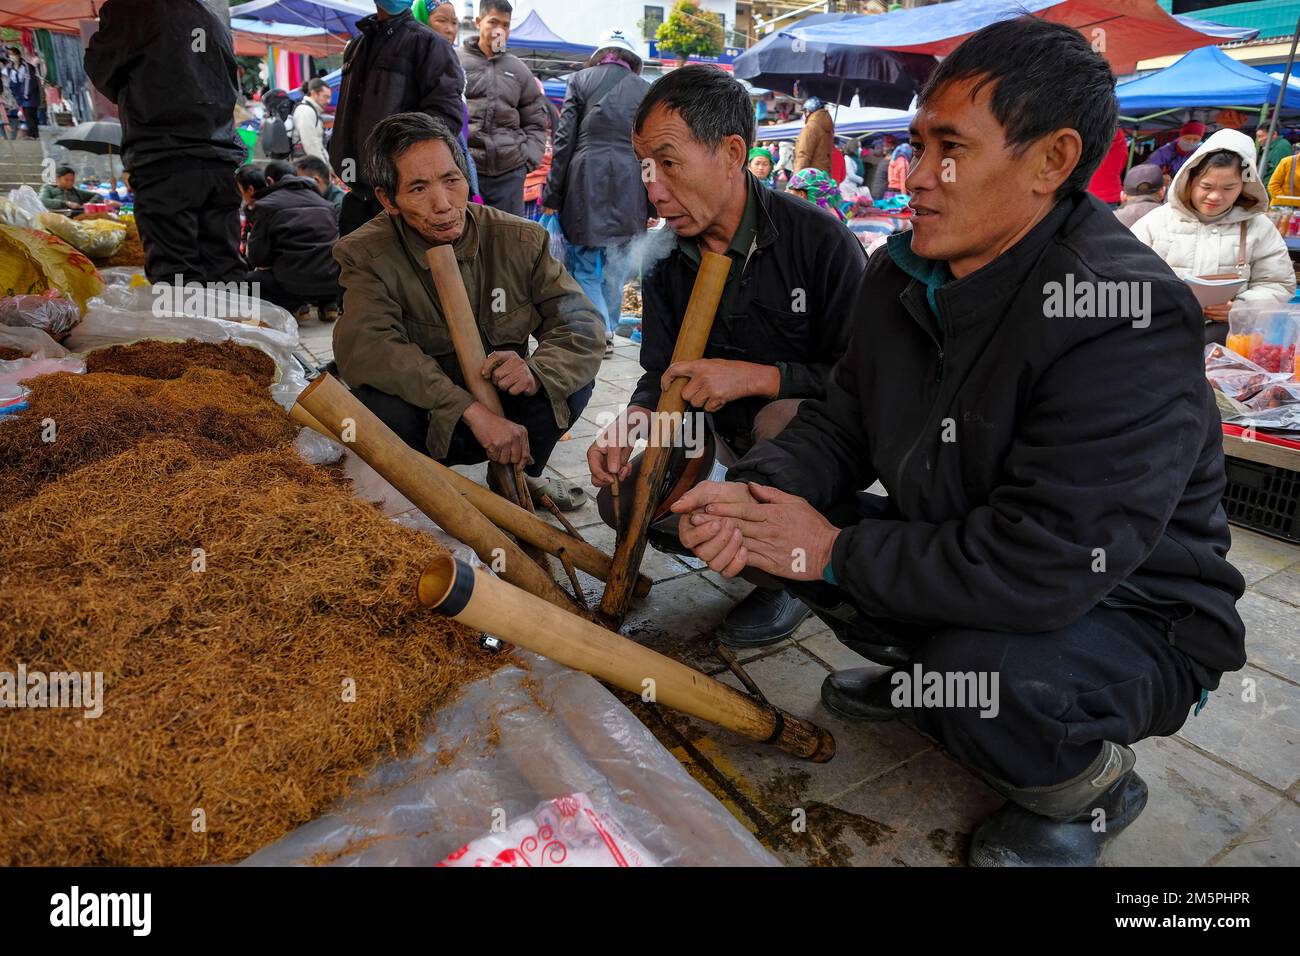 BAC Ha, Vietnam - 18. Dezember 2022: Männer, die auf dem Wochenmarkt von Bac Ha in Vietnam Tabak rauchen. Stockfoto